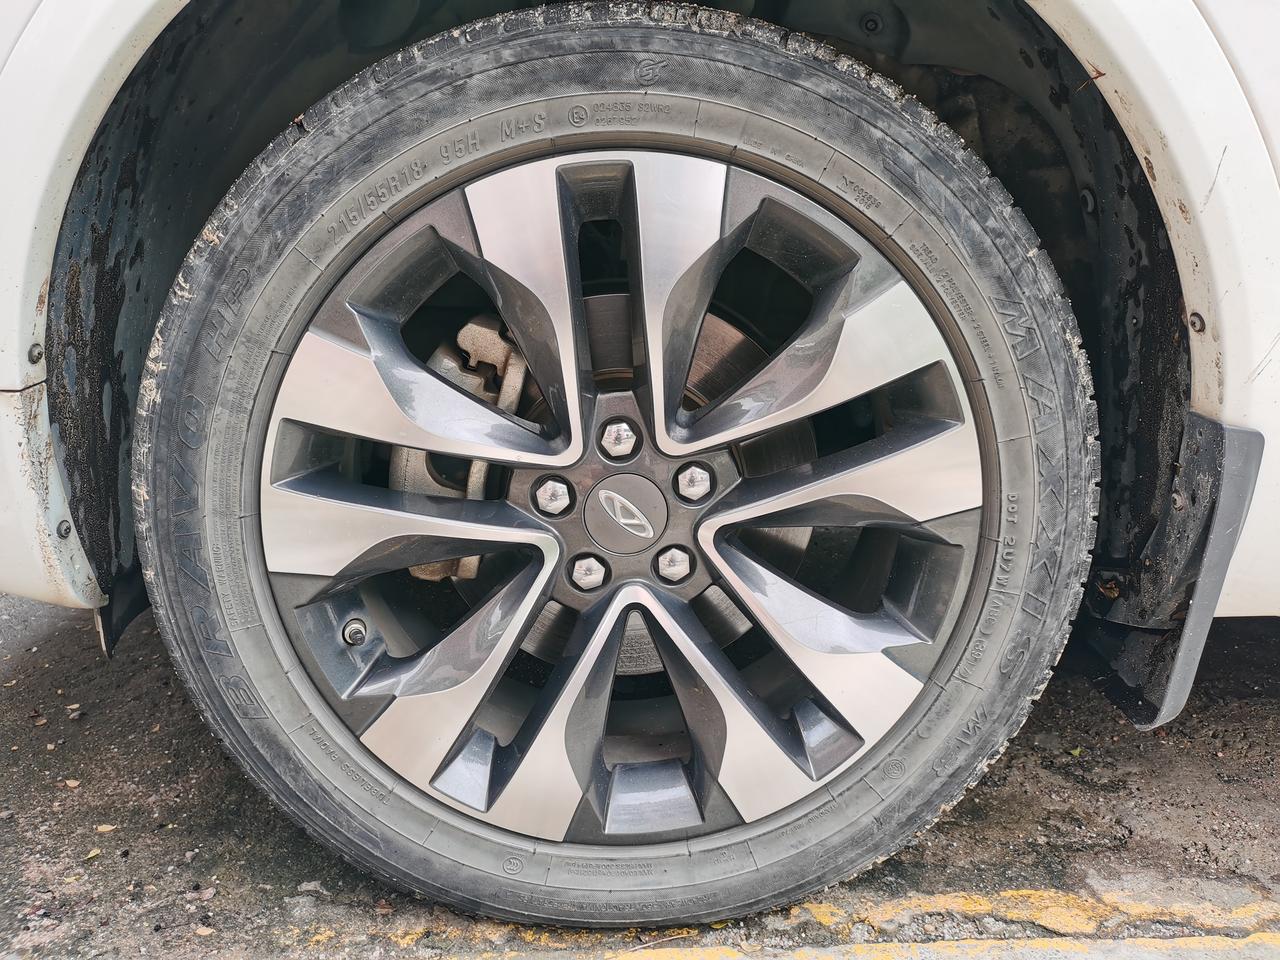 奇瑞瑞虎5x 2017款自动豪华版的轮胎是不玛吉斯轮胎啊？